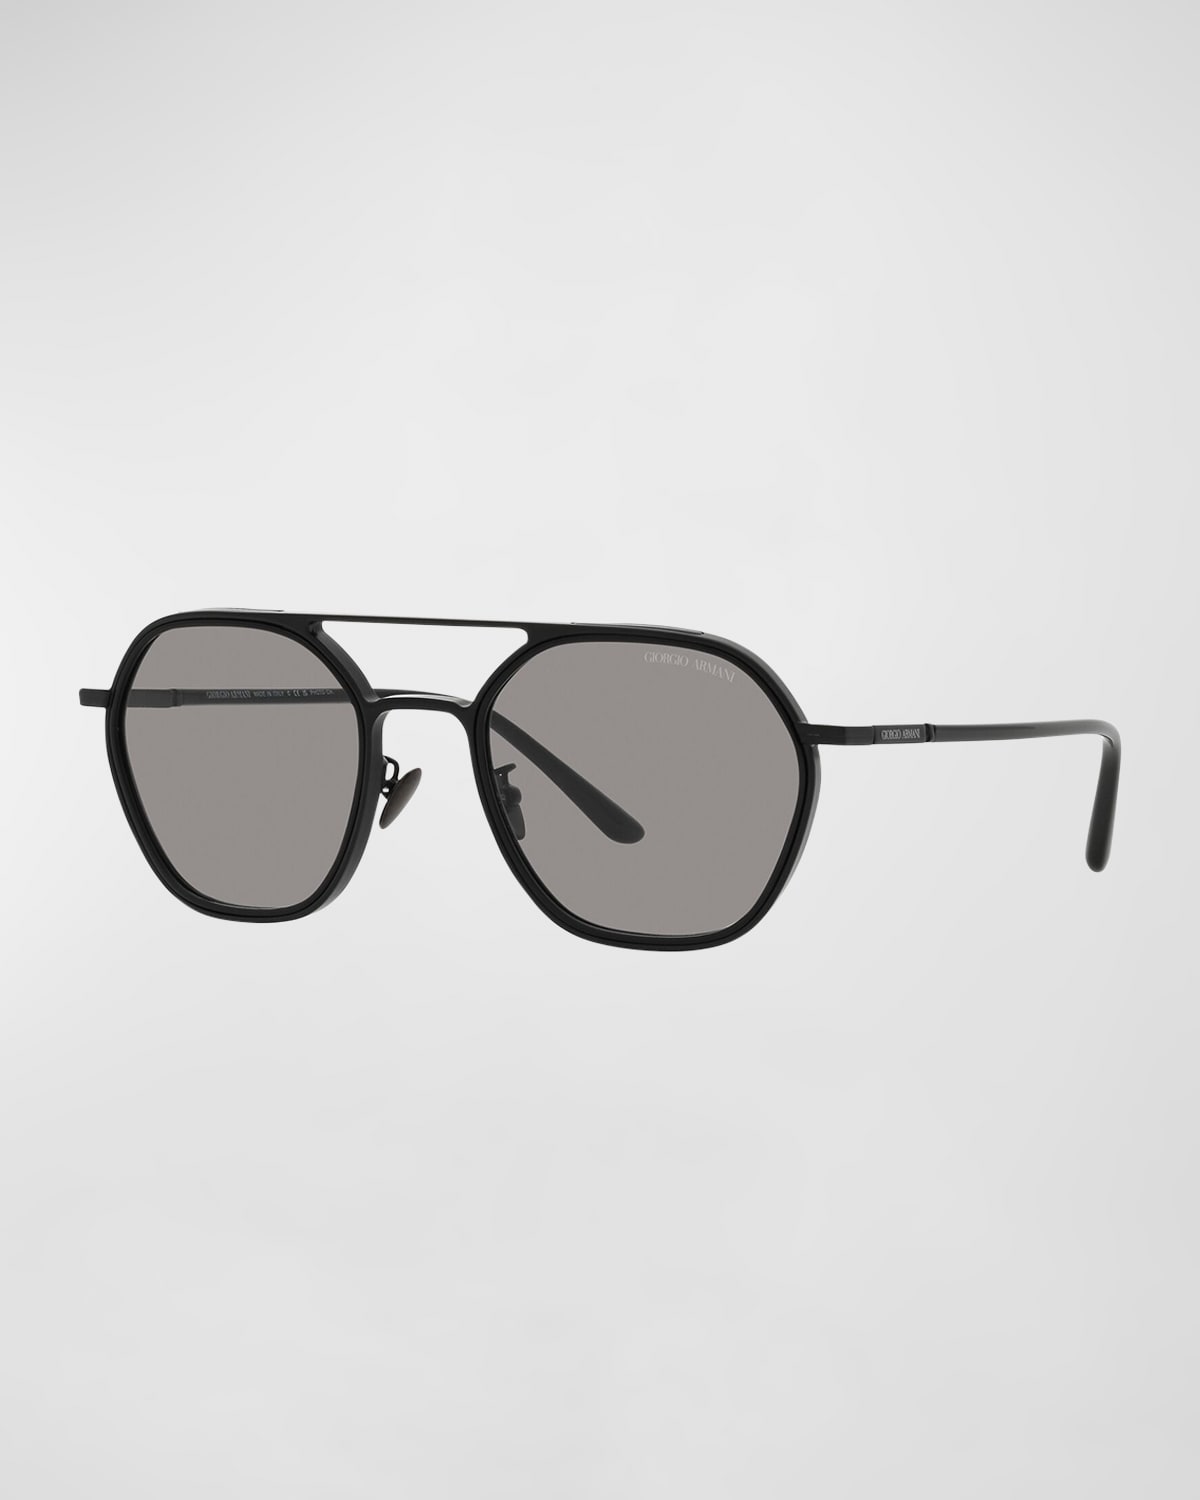 Giorgio Armani Monochrome Metal Aviator Sunglasses In Matte Black